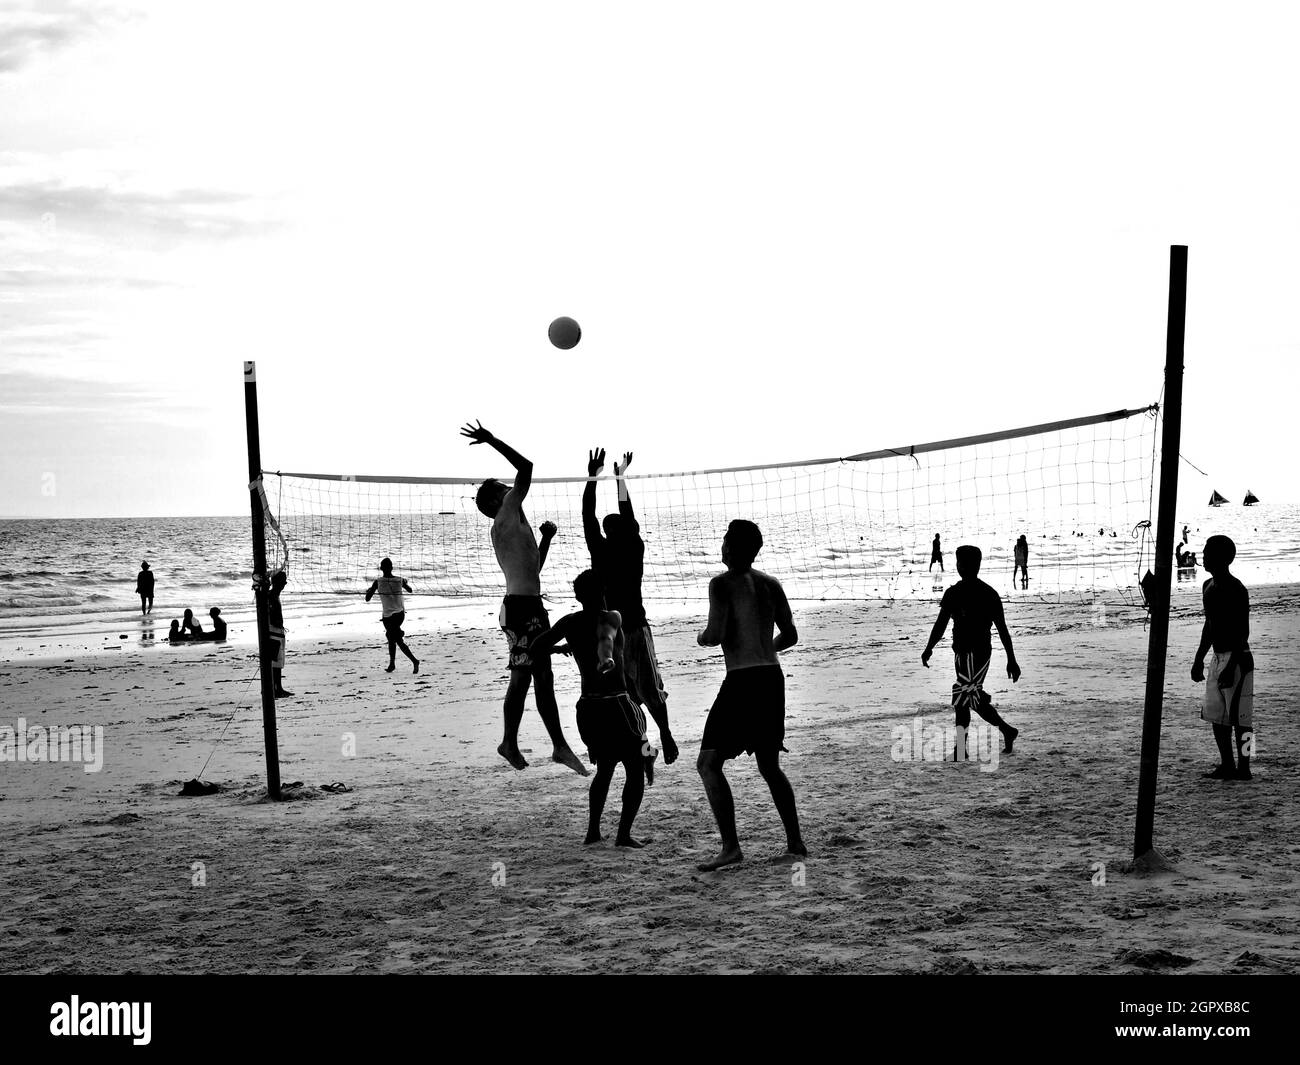 Volleyball 22 cm Beachvolleyball Sportball kunstlederball Wettspielball Ball 